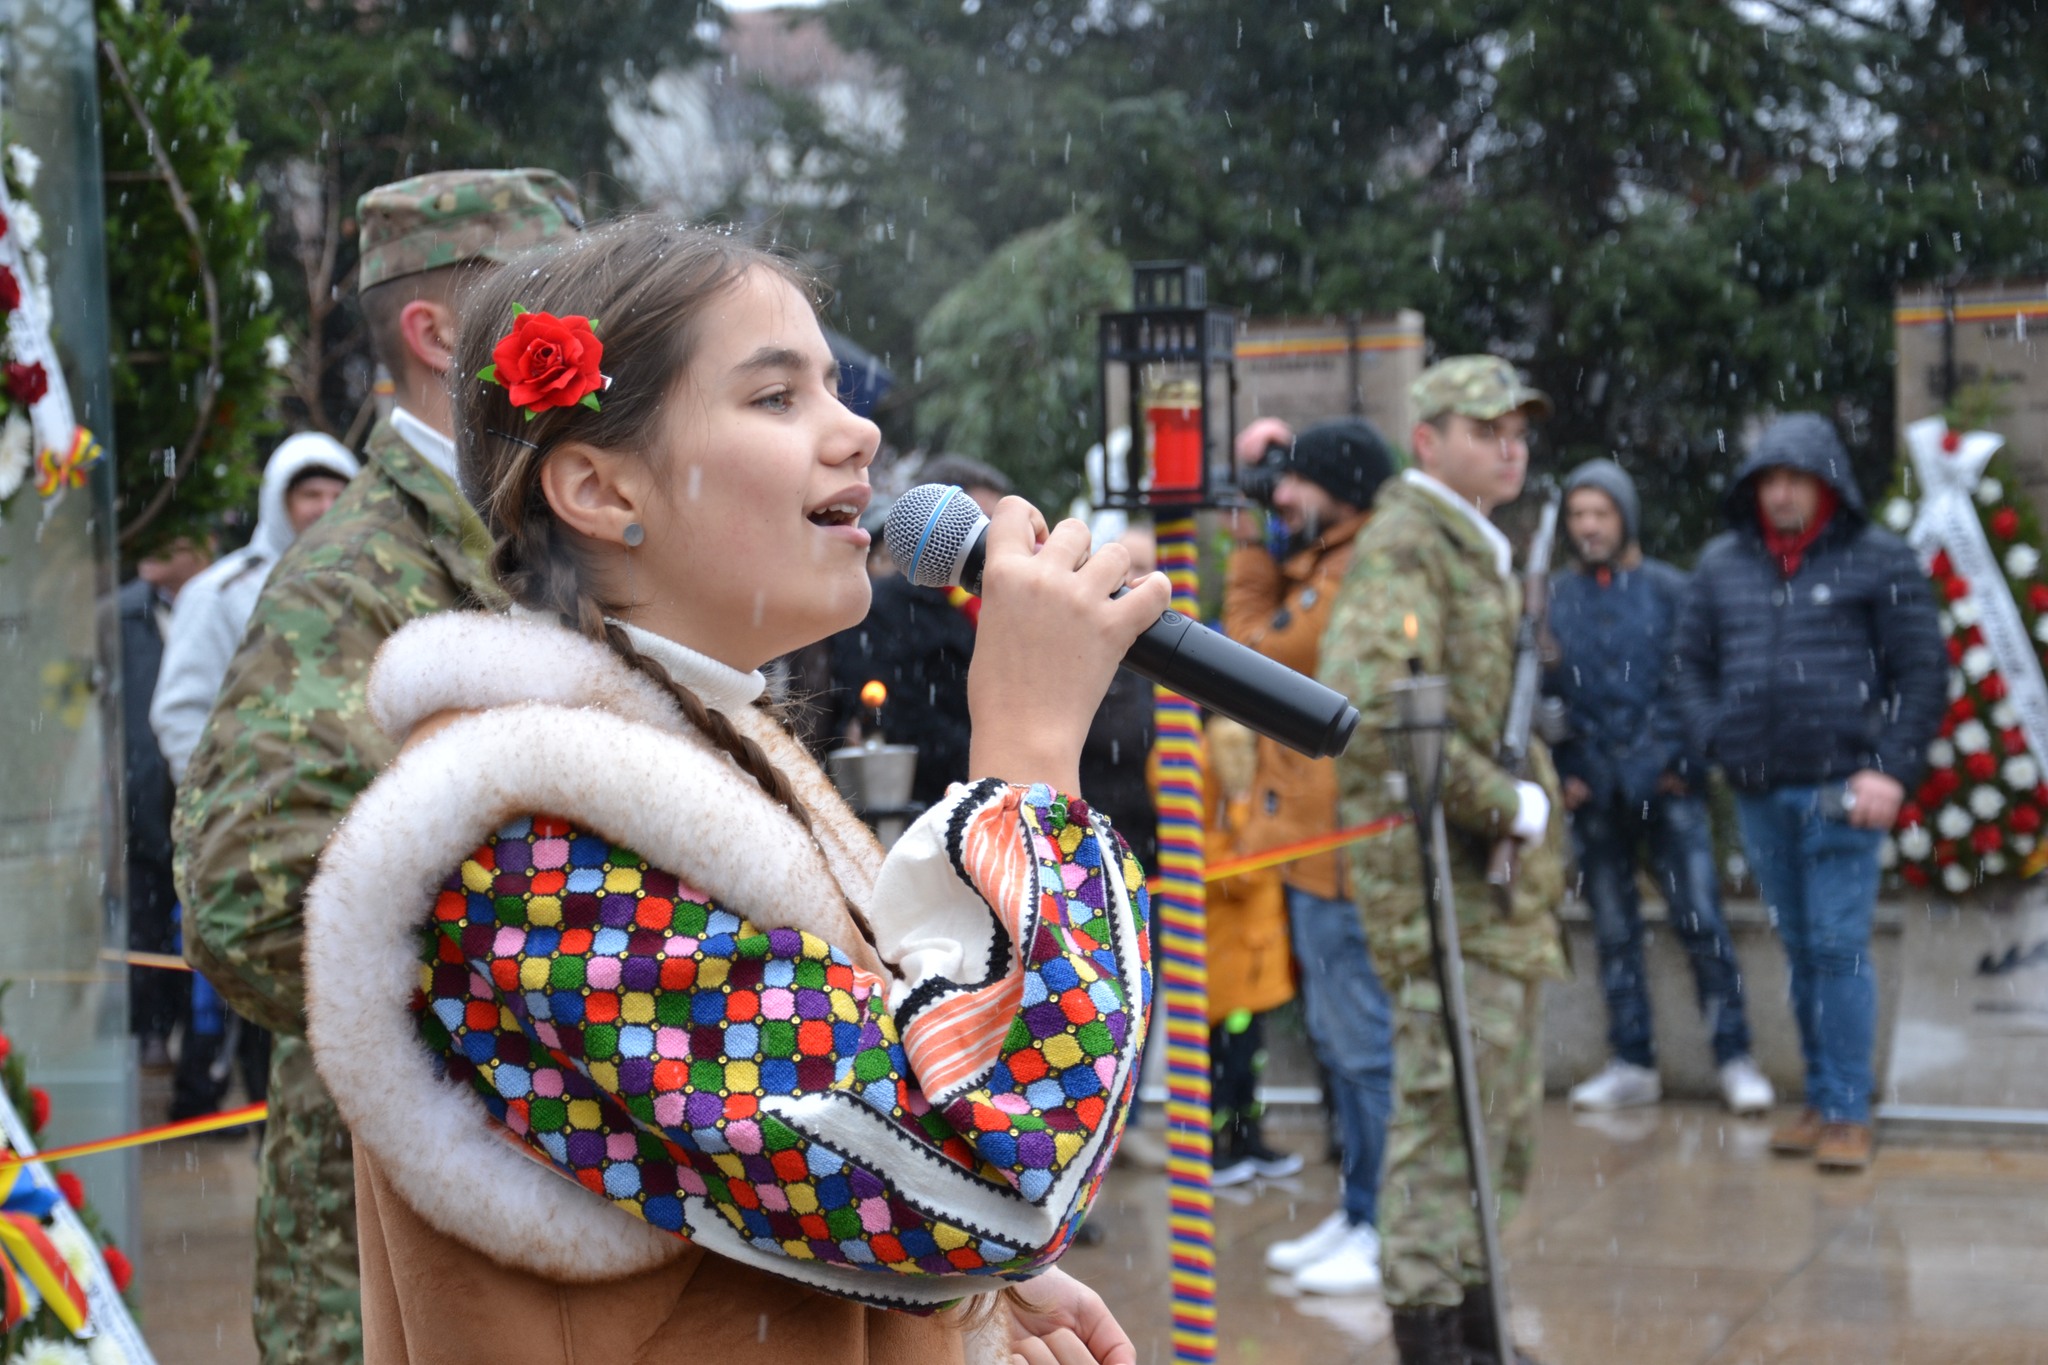 Ziua Naţională a României a fost celebrată cu cinste la Mioveni